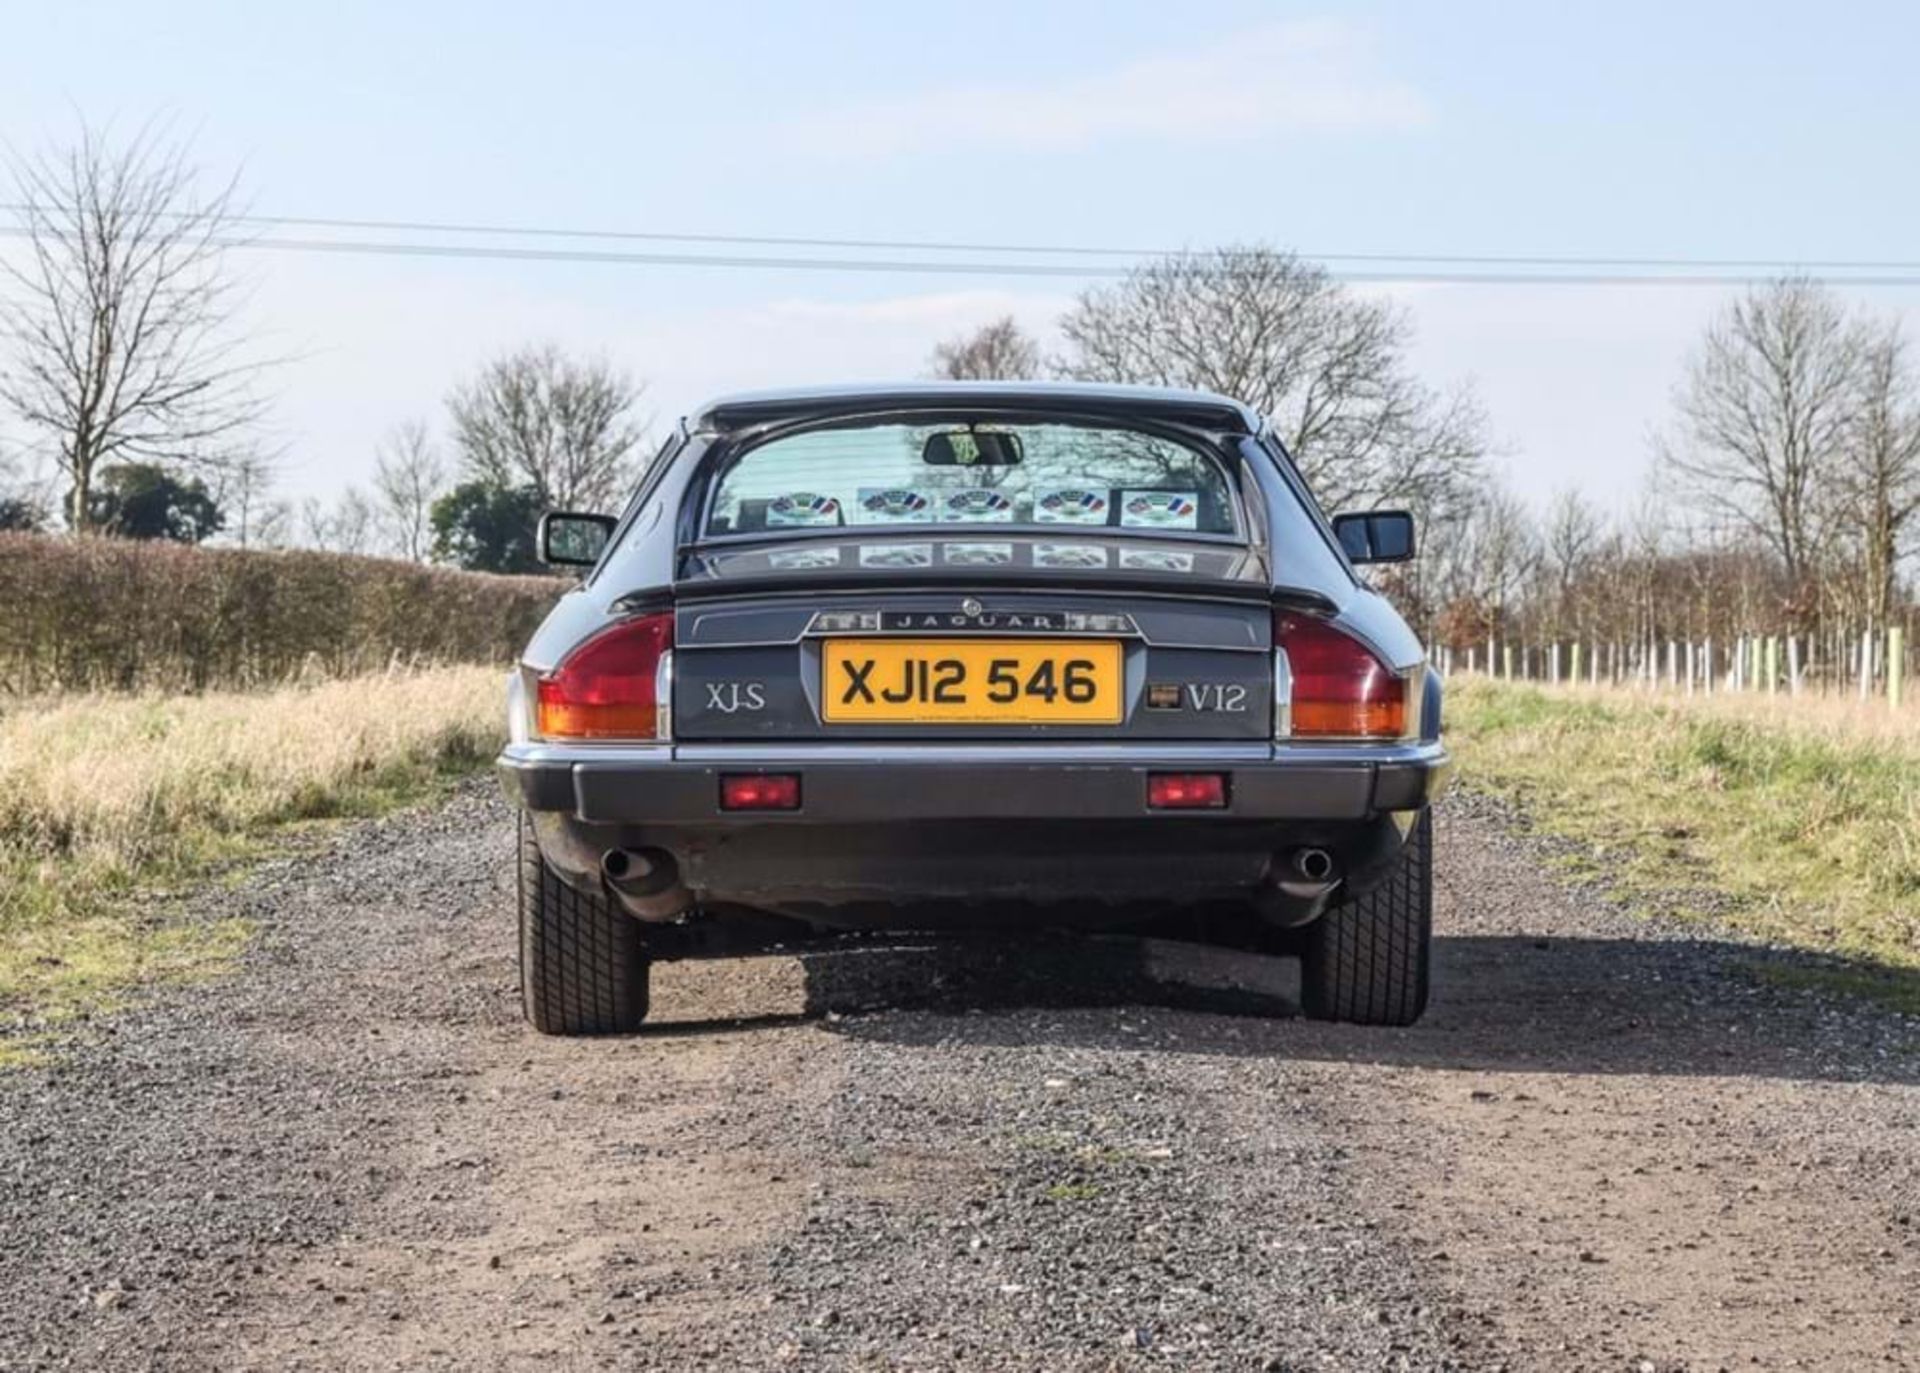 1987 Jaguar XJS Jubilee Edition - Image 8 of 10